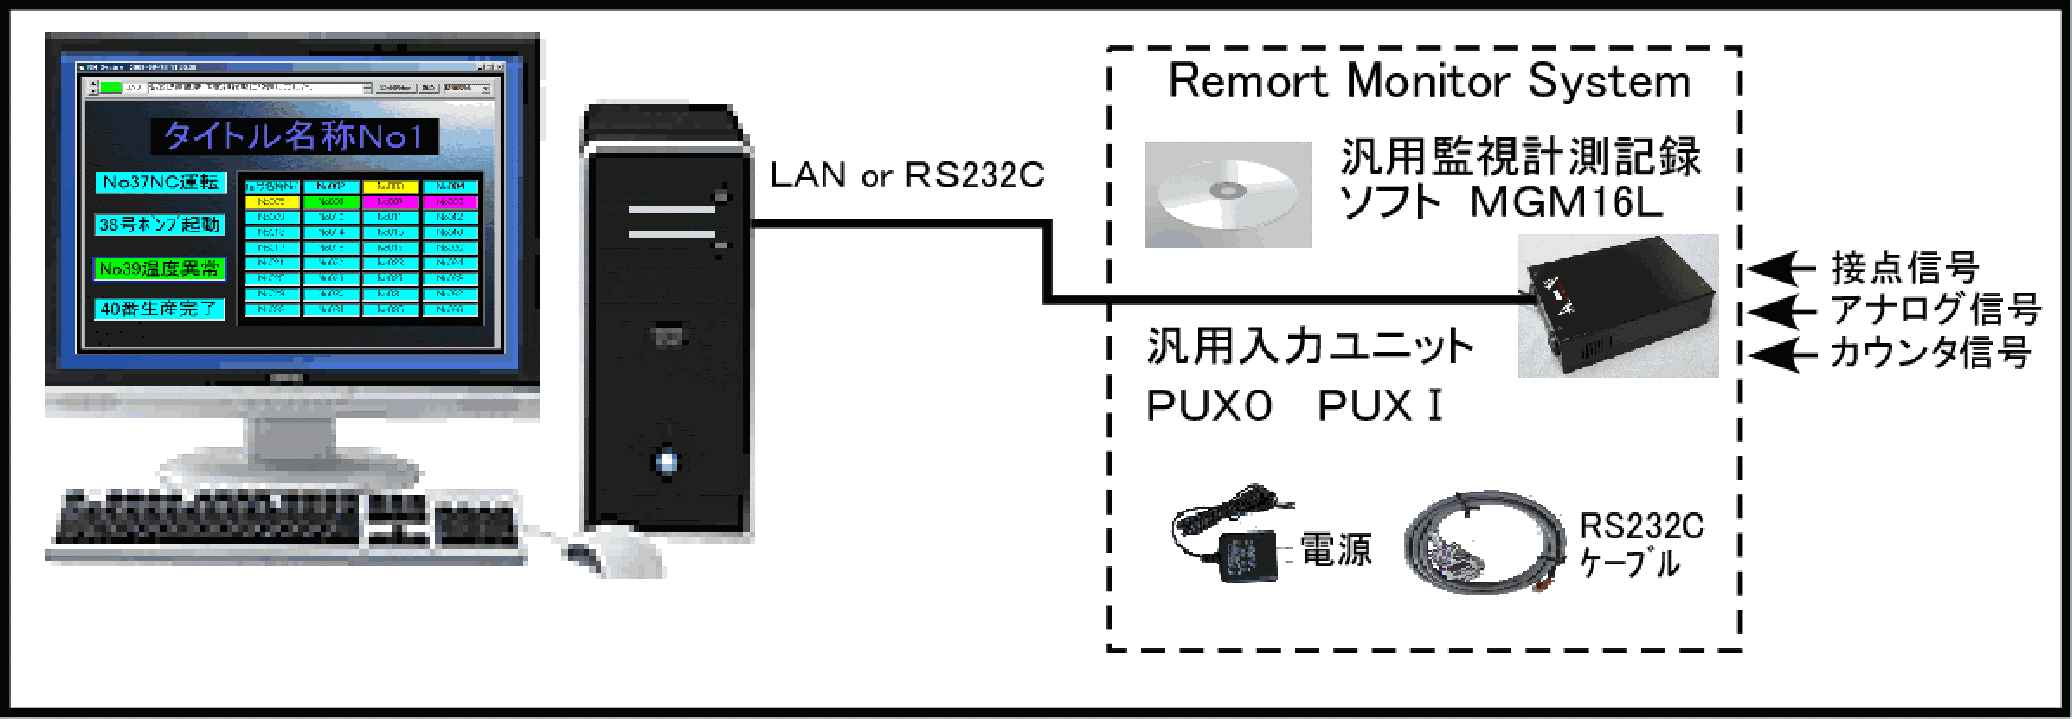 リモートモニターシステムはLANもしくはRS232Cで接続可能です。汎用計測記録ソフトMGM16Lと汎用ユニットPUXORもしくはPUXIRがセットになっておりユニットに接点信号、アナログ信号、カウンタ信号を取り込みデータをパソコンで管理することができます。